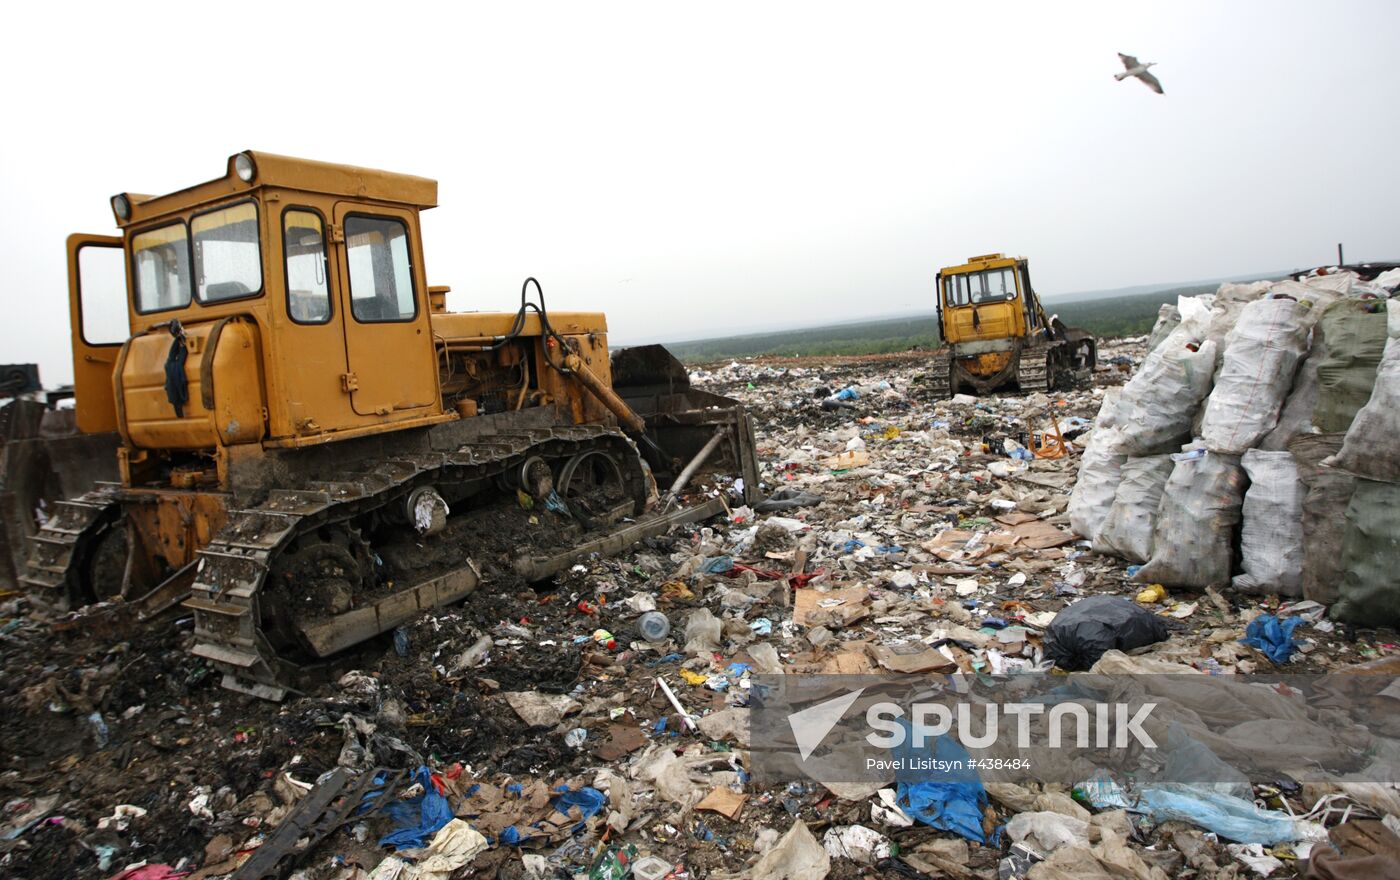 Municipal waste disposal in Yekaterinburg